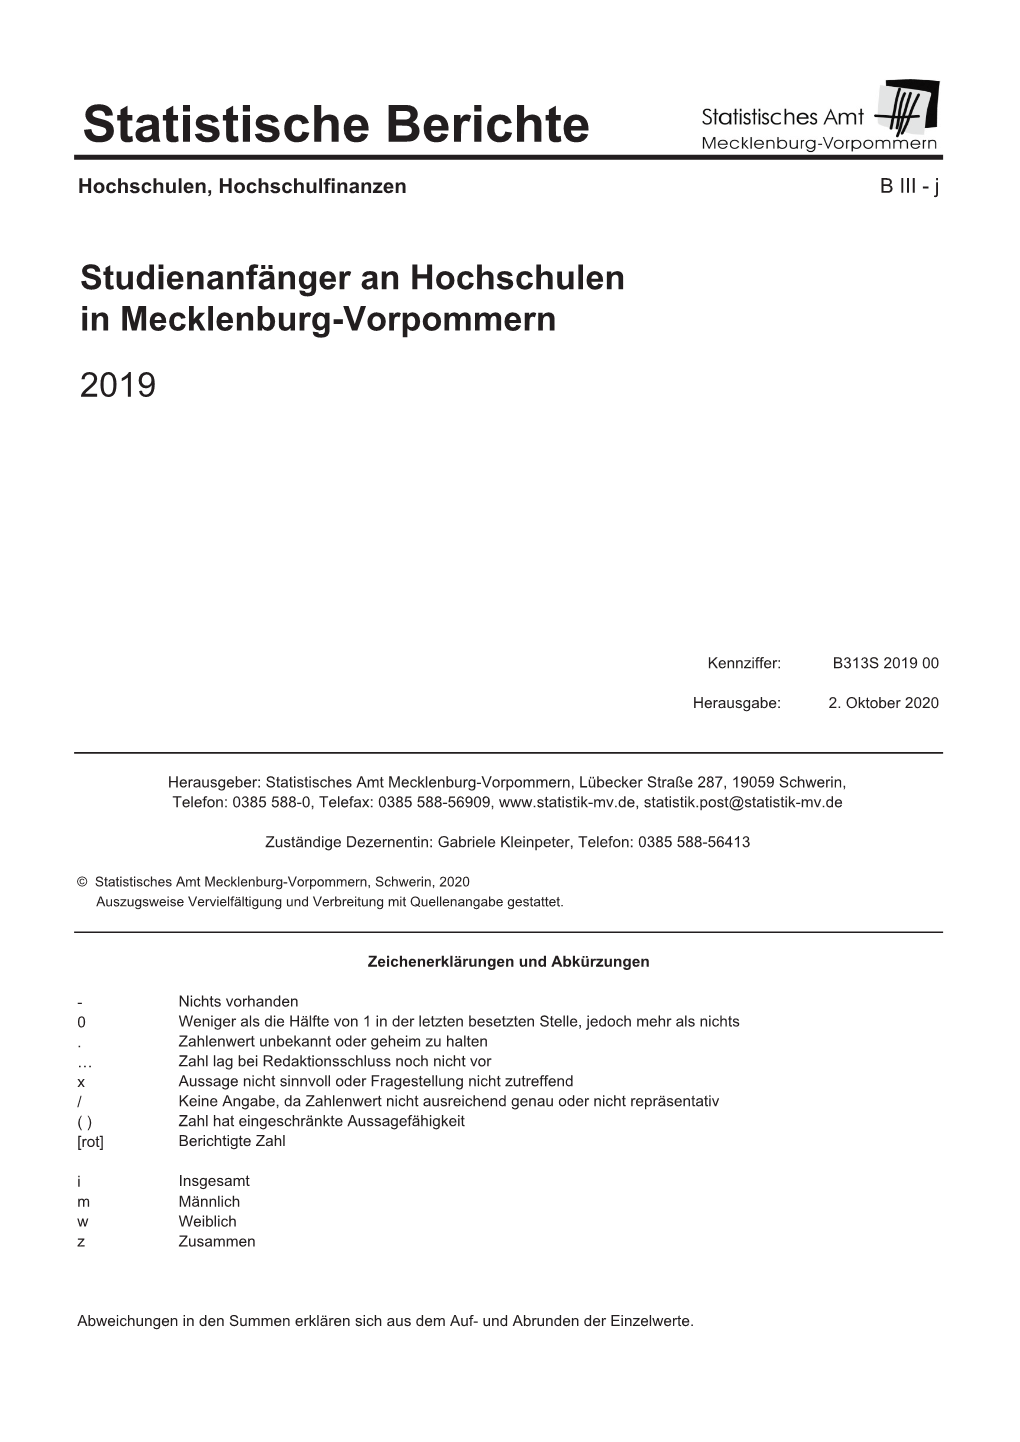 Studienanfänger an Hochschulen in Mecklenburg-Vorpommern 2019